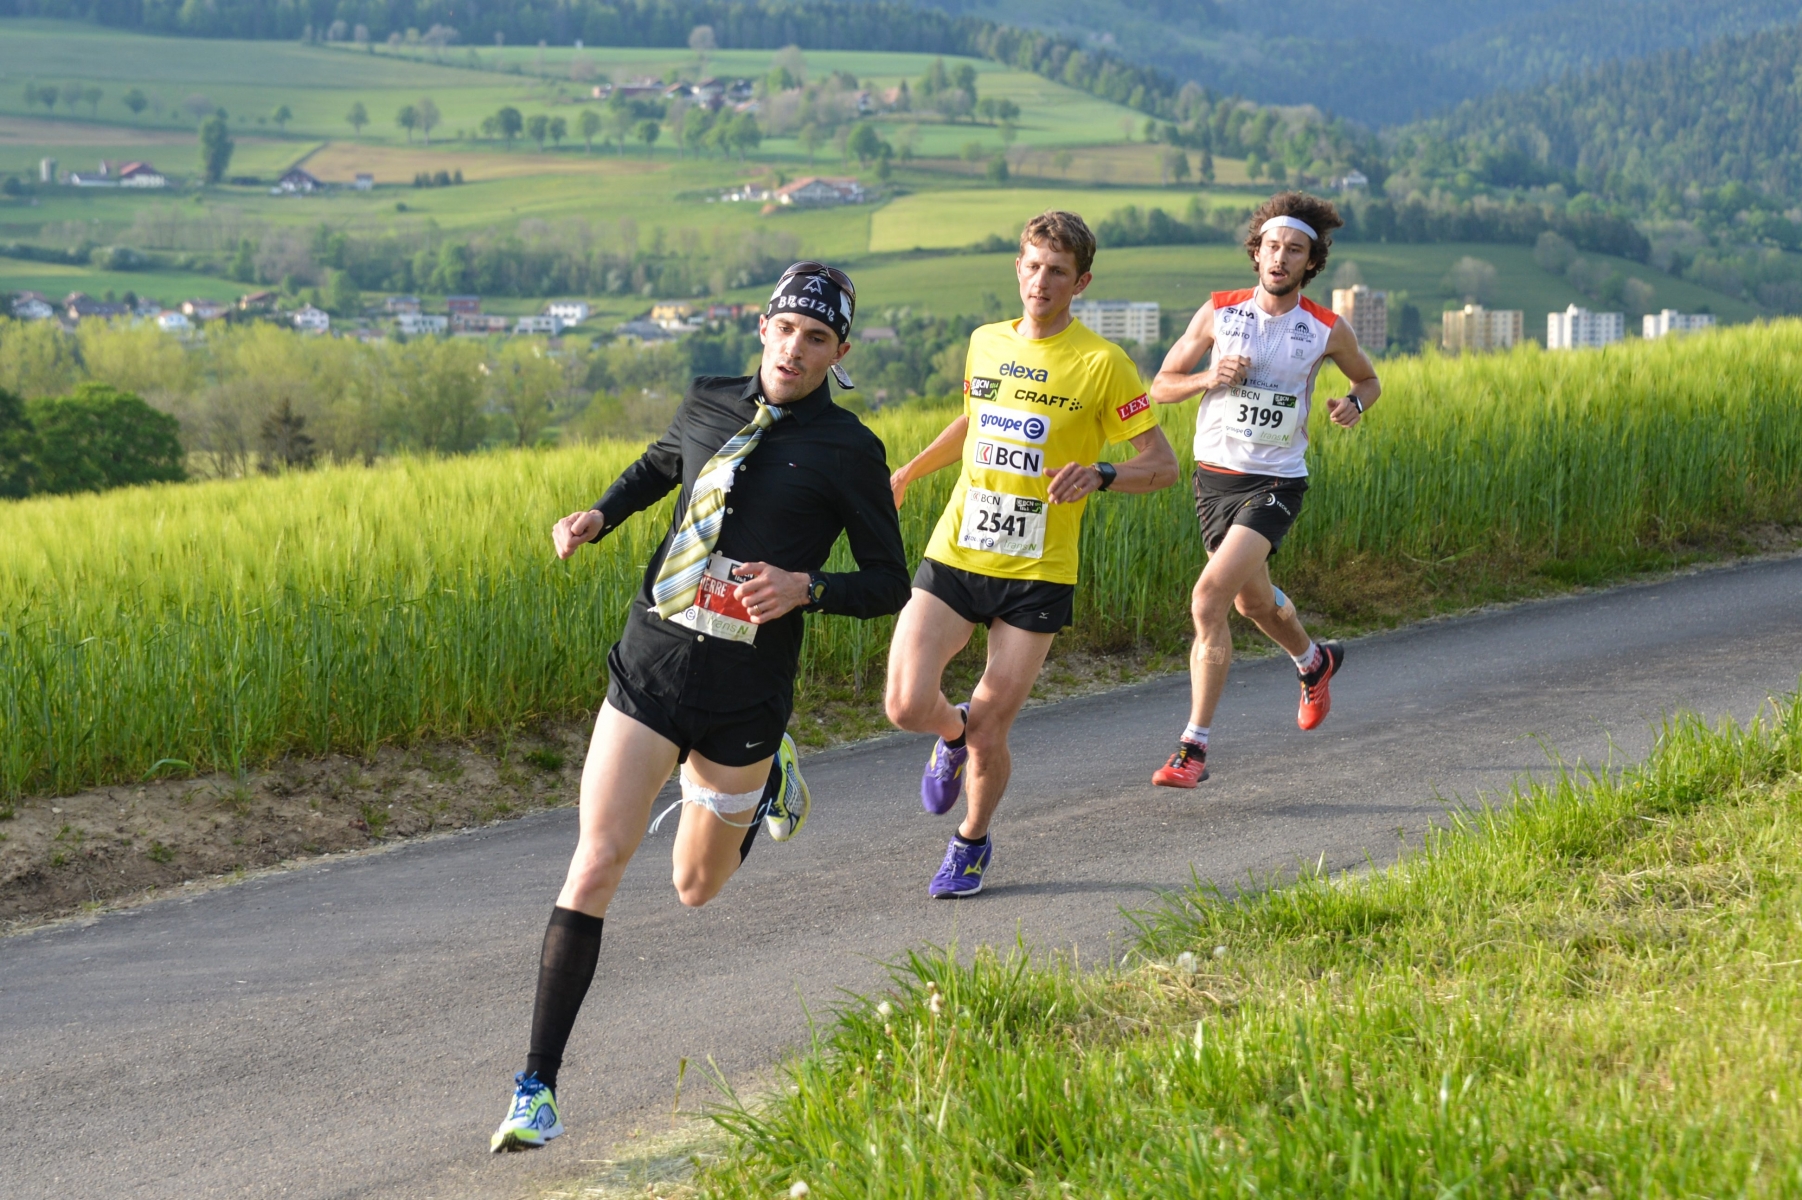 Thibaut Baronian (tout à droite) a terminé devant Marc Lauenstein (en jaune) et Pierre Fournier (en noir).

COUVET
21 05 2014
PHOTO: CHRISTIAN GALLEY